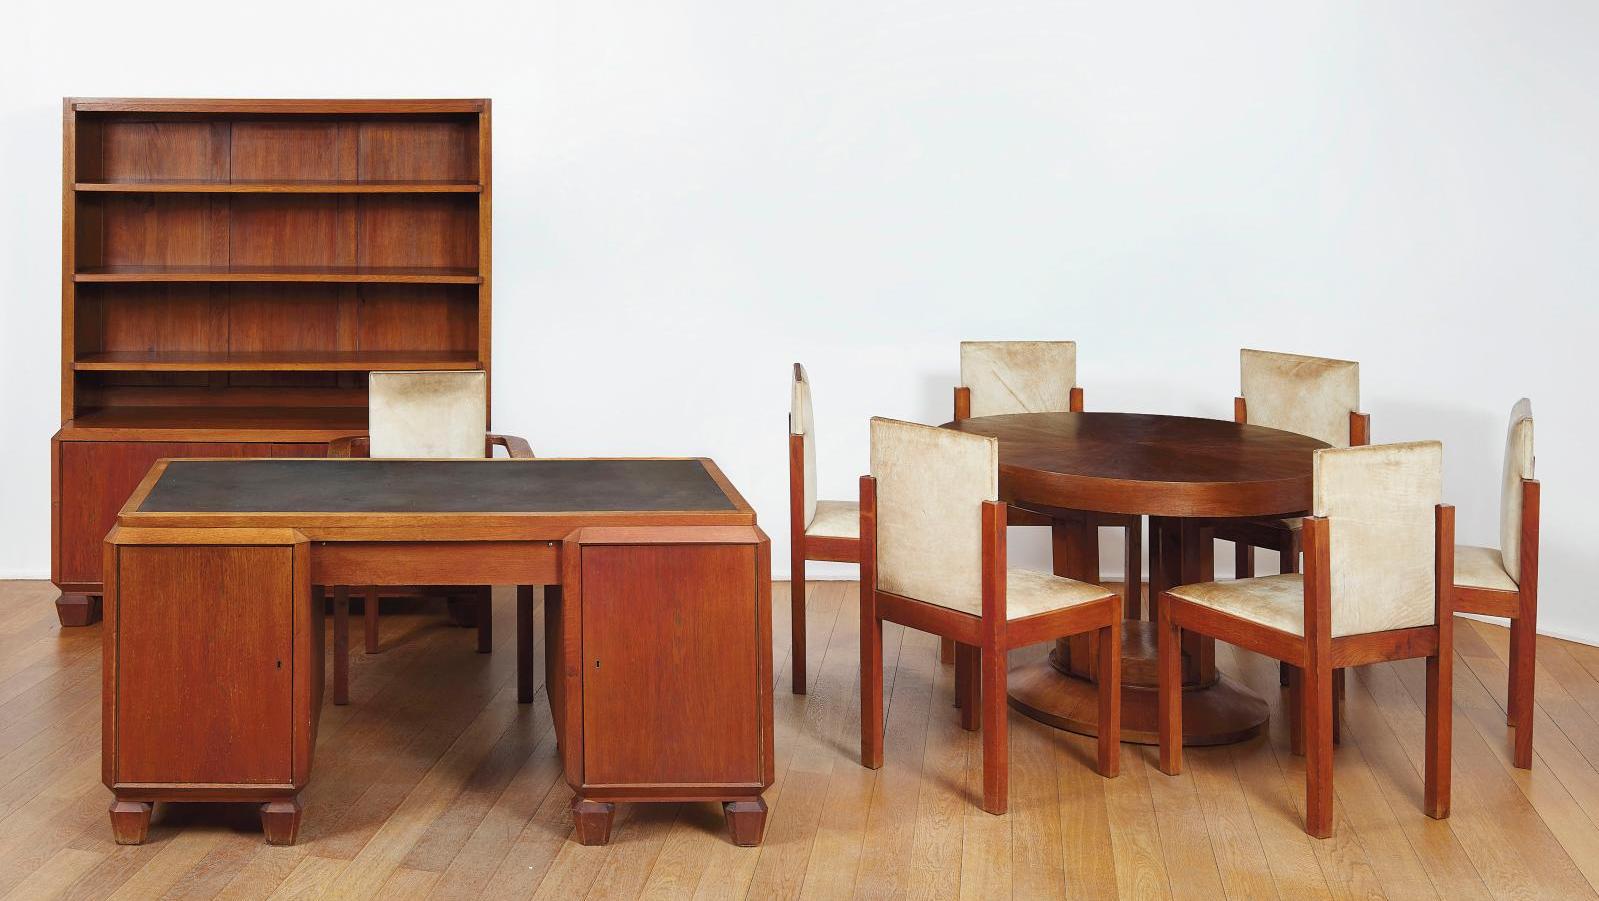 Walter Gropius (1883-1969) et Adolf Meyer (1881-1929), Weimar, vers 1927, dix meubles... Le salon de Walter Gropius et Adolf Meyer